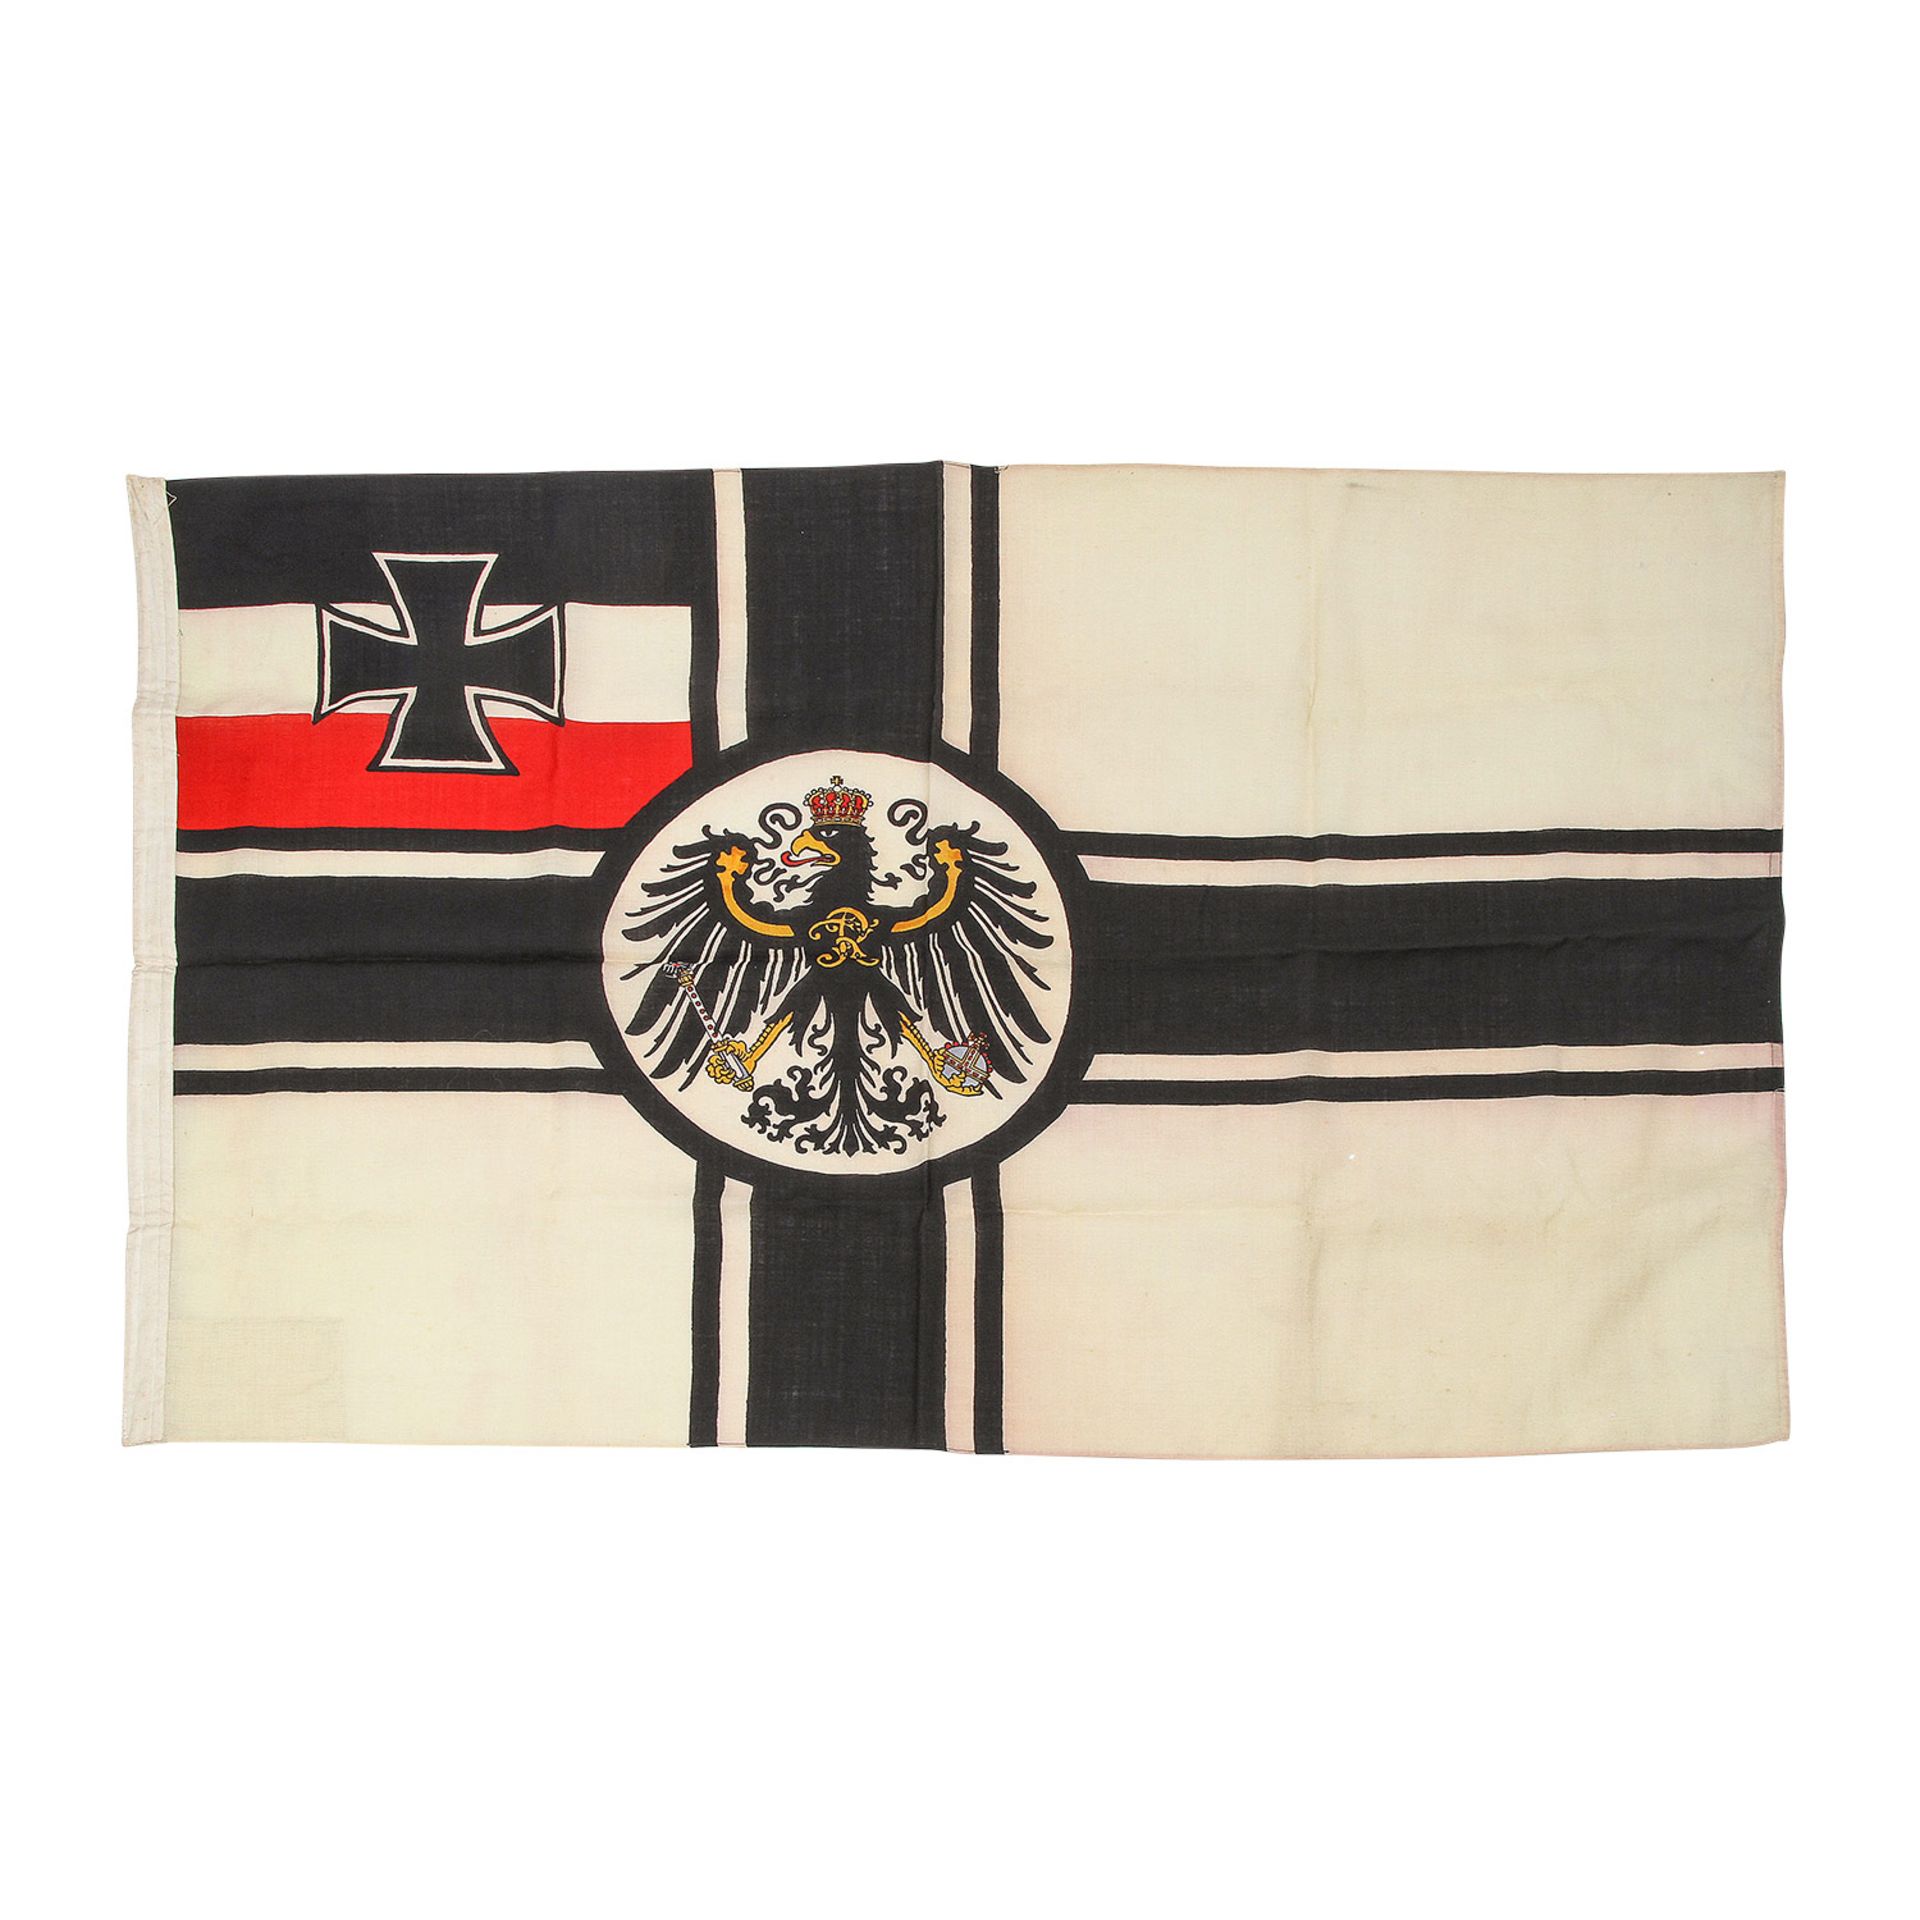 Kaiserliche Marine - Reichskriegsflagge, bedrucktes Leinengewebe. Kleine Fehlstellen und wenige